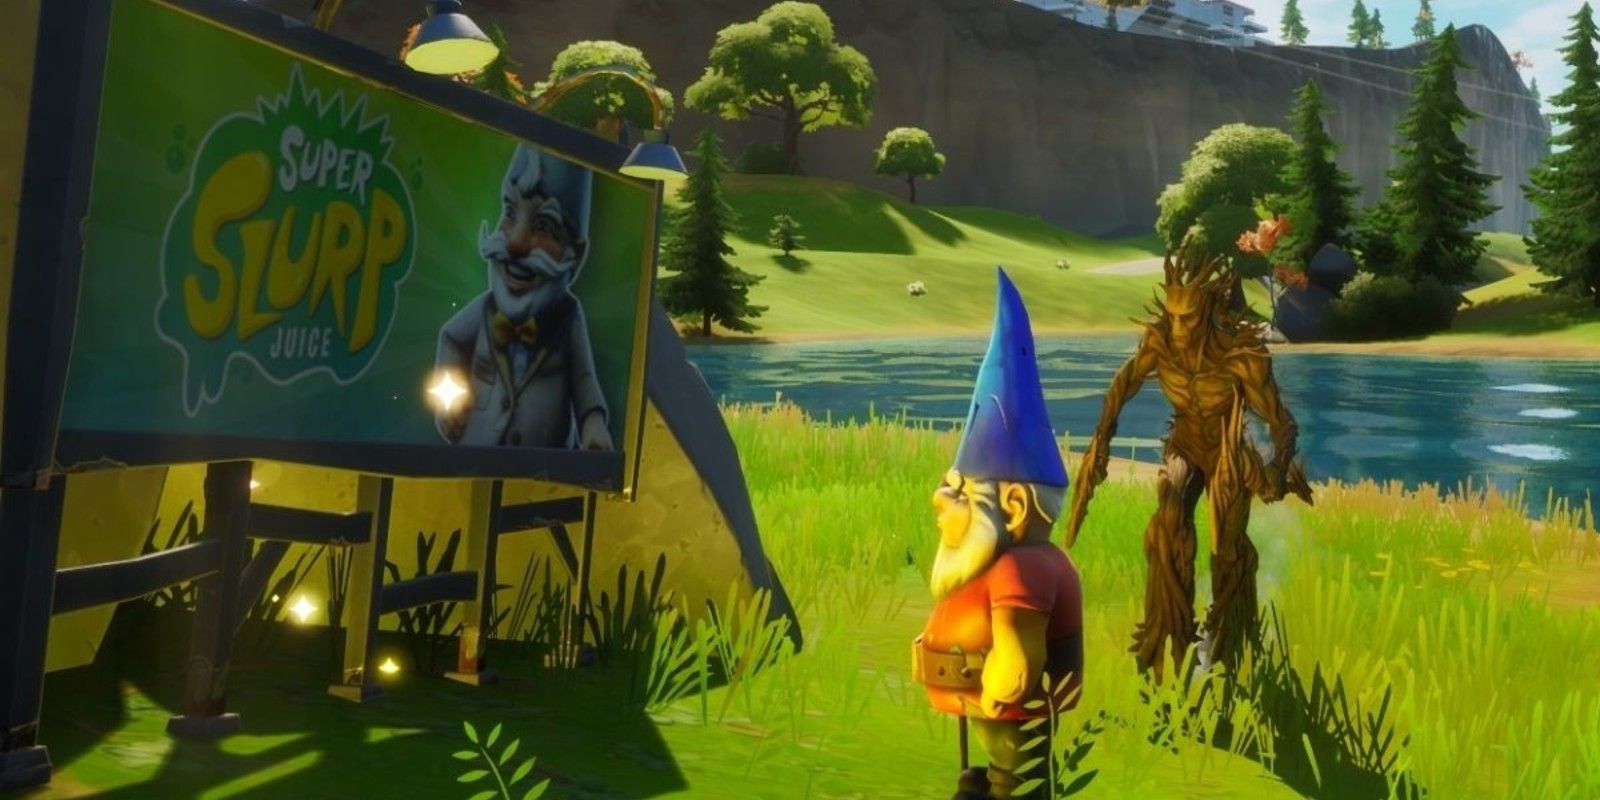 A gnome stares at the Super Slurp Juice billboard in Fortnite Season 4